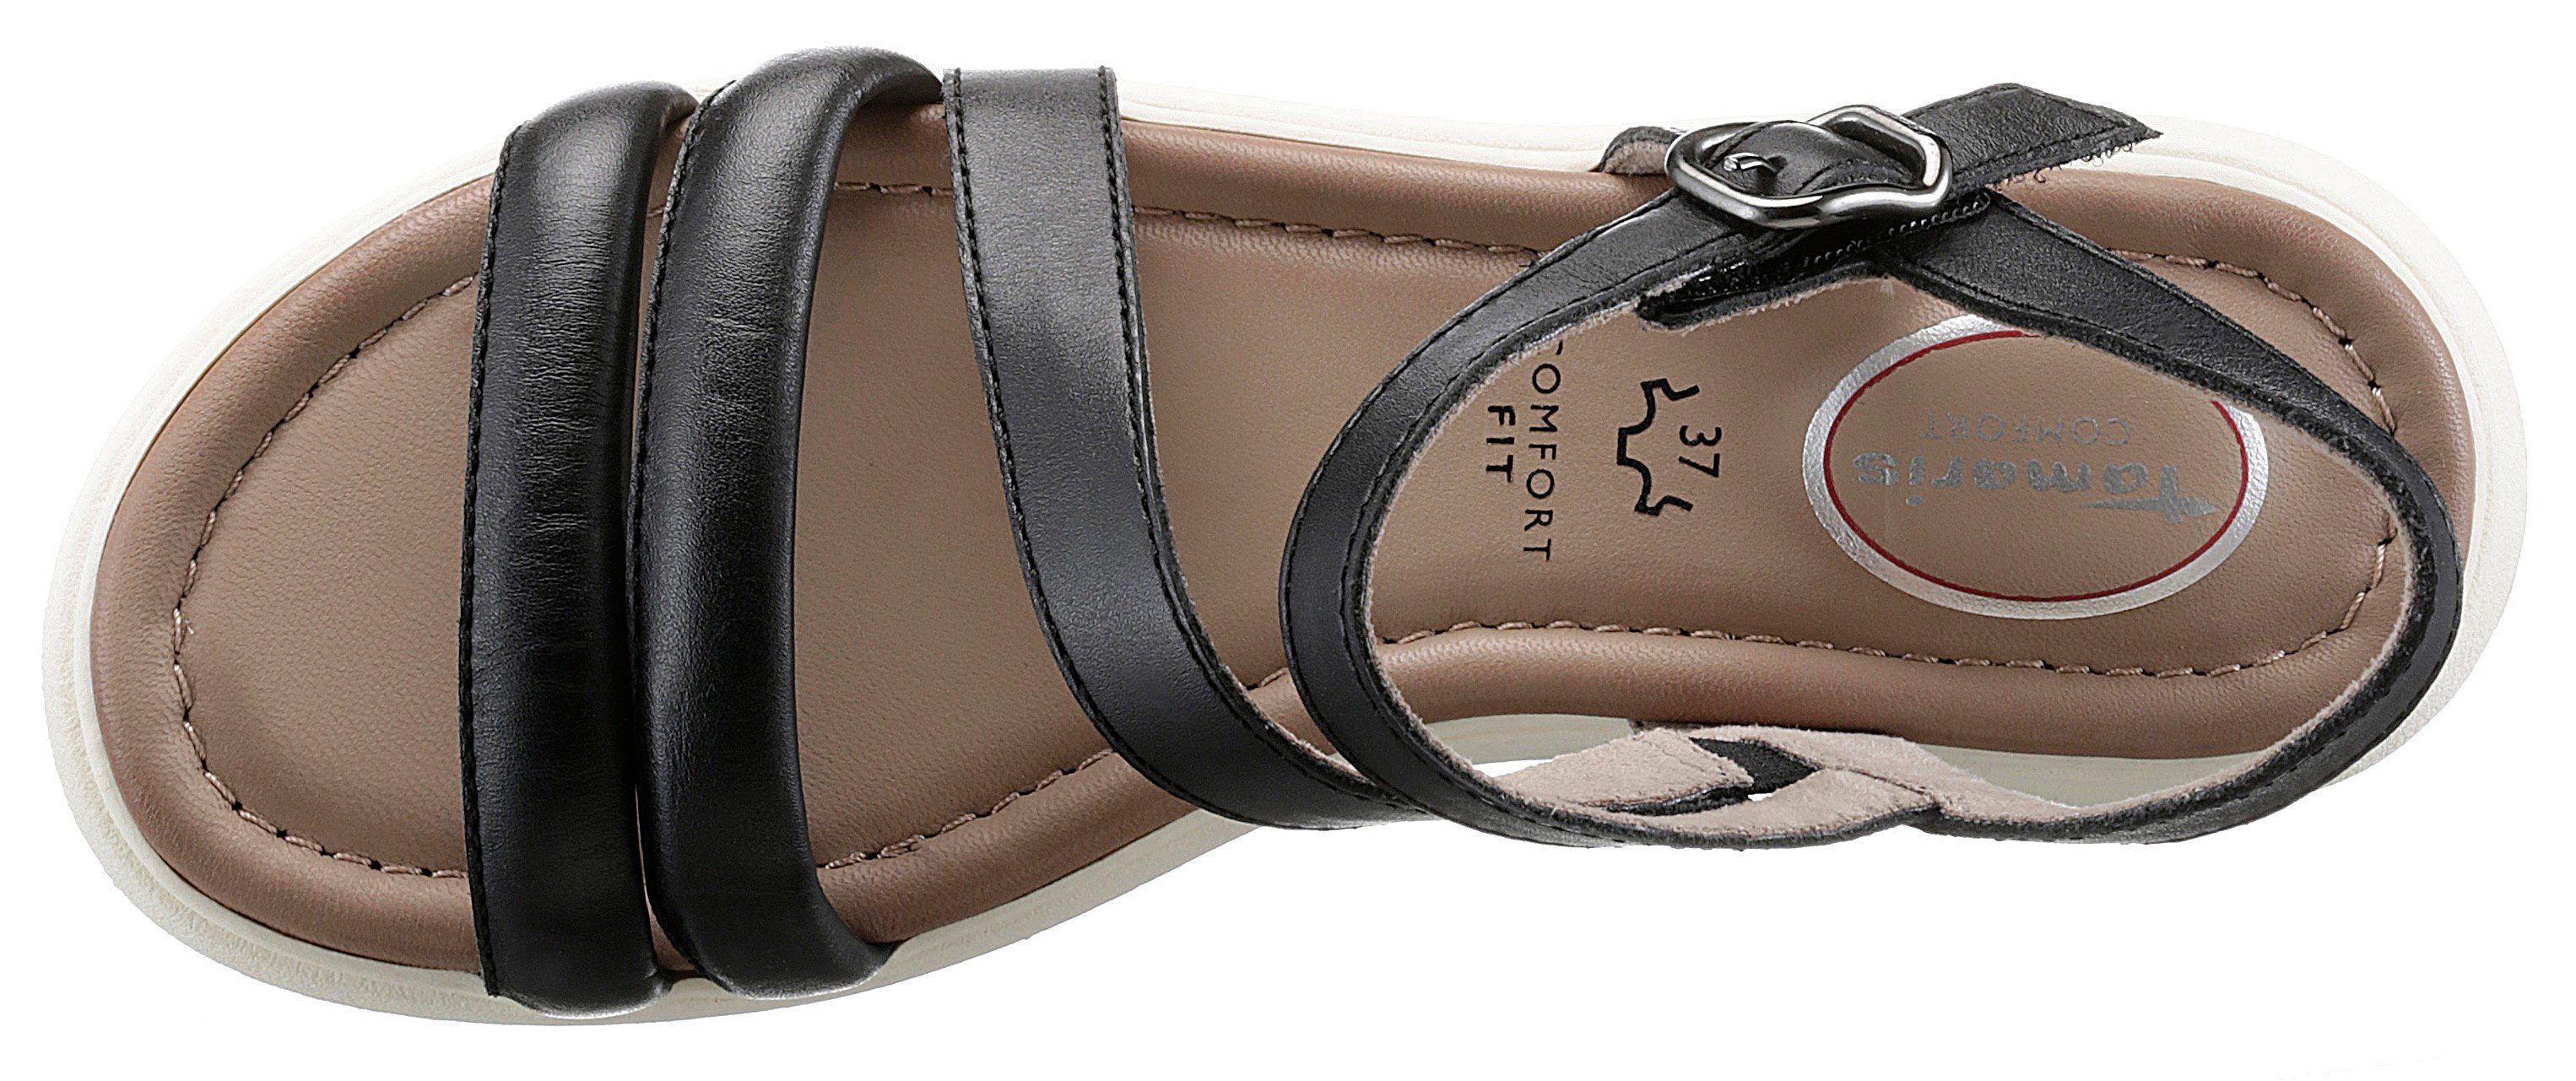 Tamaris COMFORT Sandale mit schwarz Zierriemchen, weit = G Weite